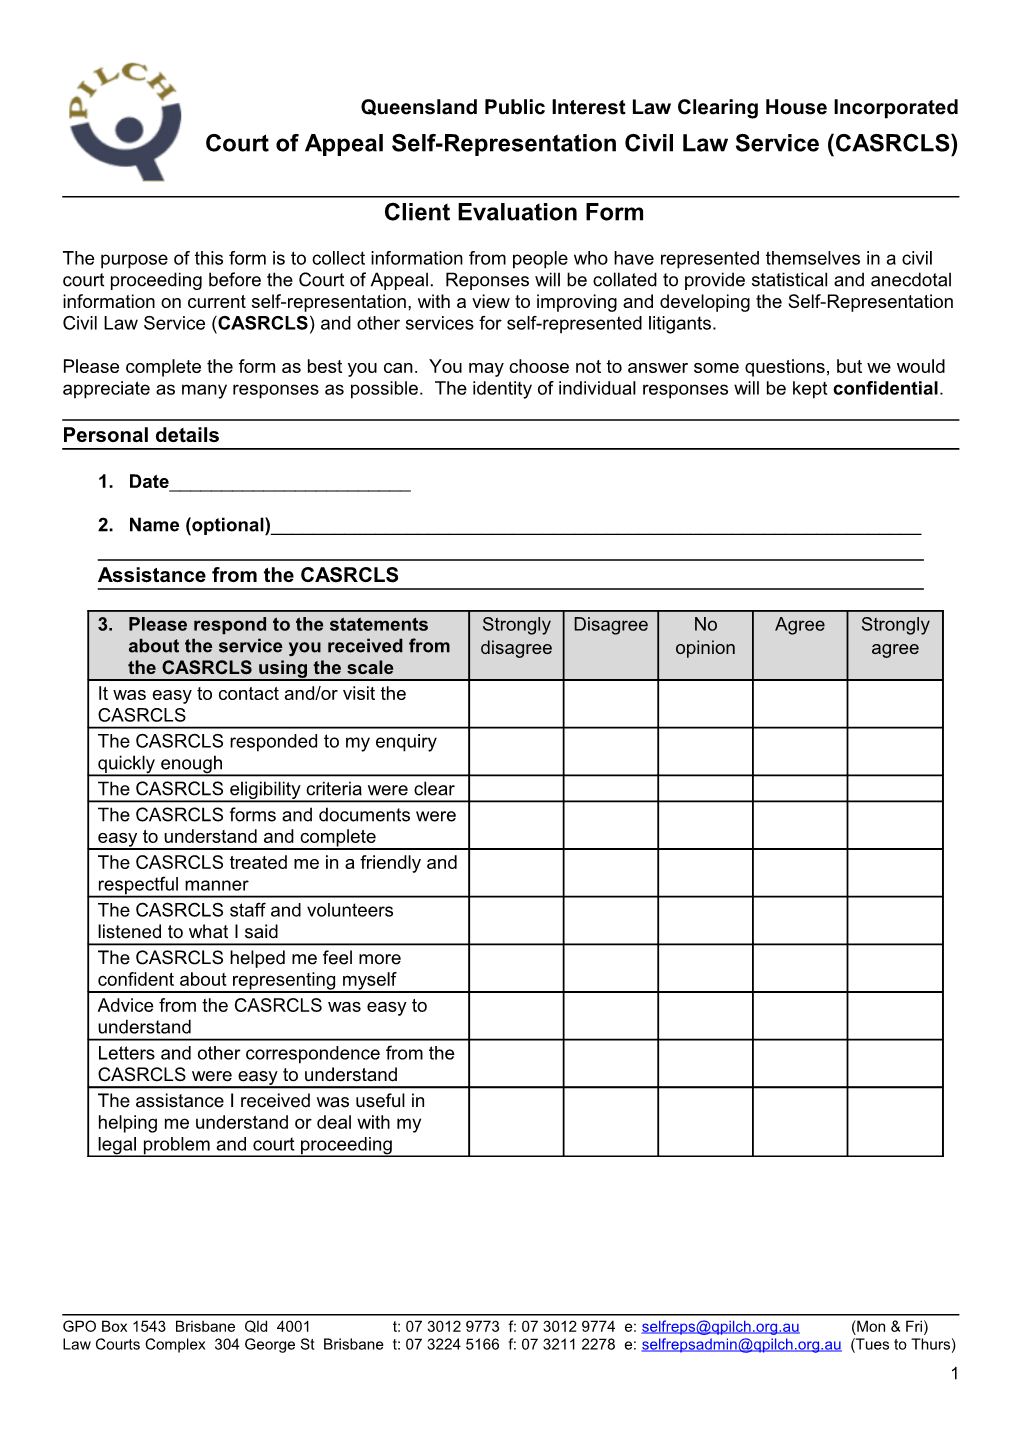 Client Evaluation Form